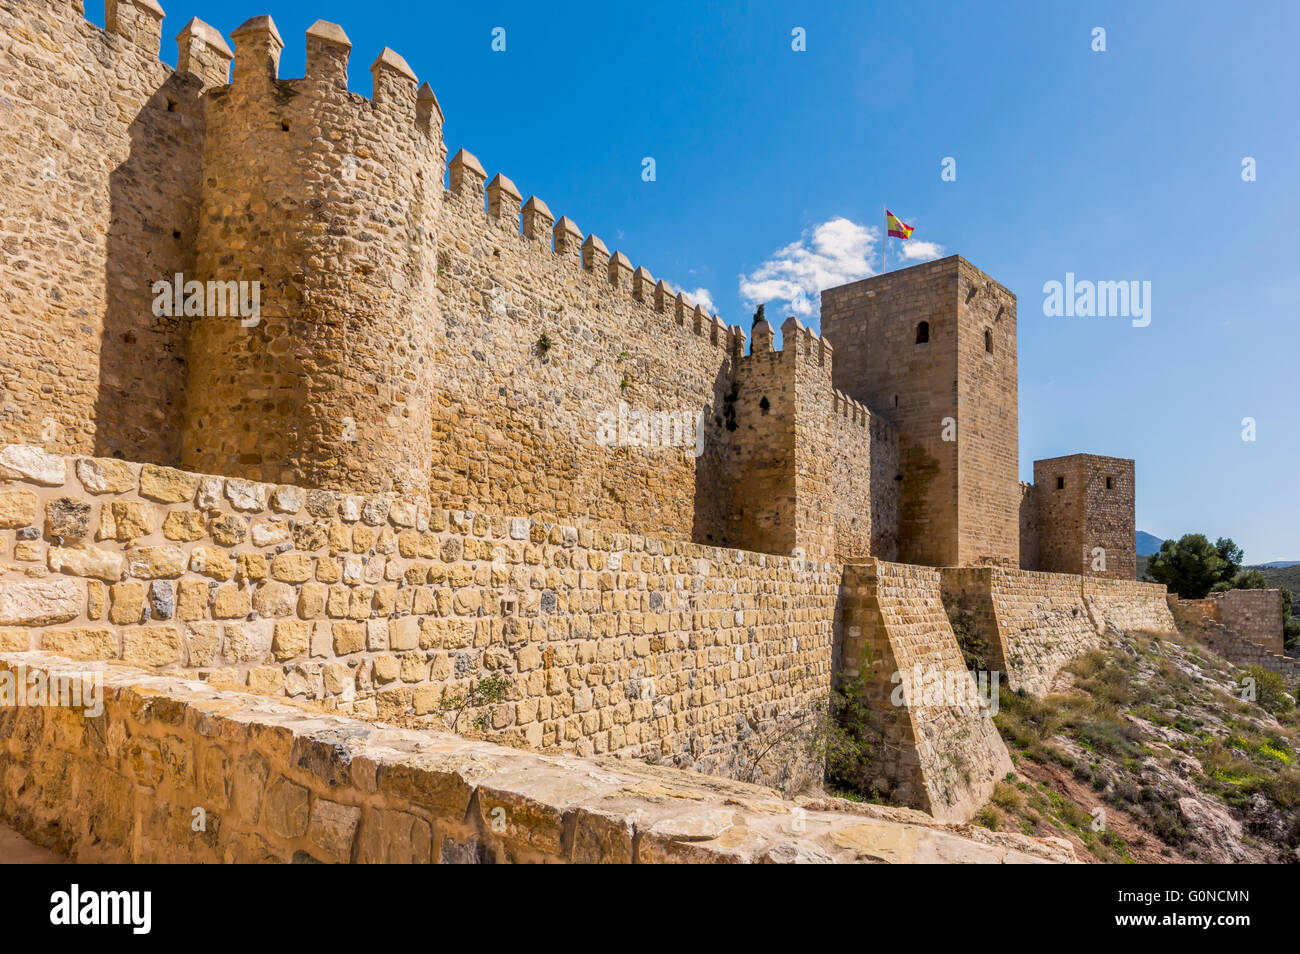 Antequera, la province de Malaga, Andalousie, Espagne du sud. Les murs et les tours de la Alcazaba, la citadelle (ou château). Banque D'Images